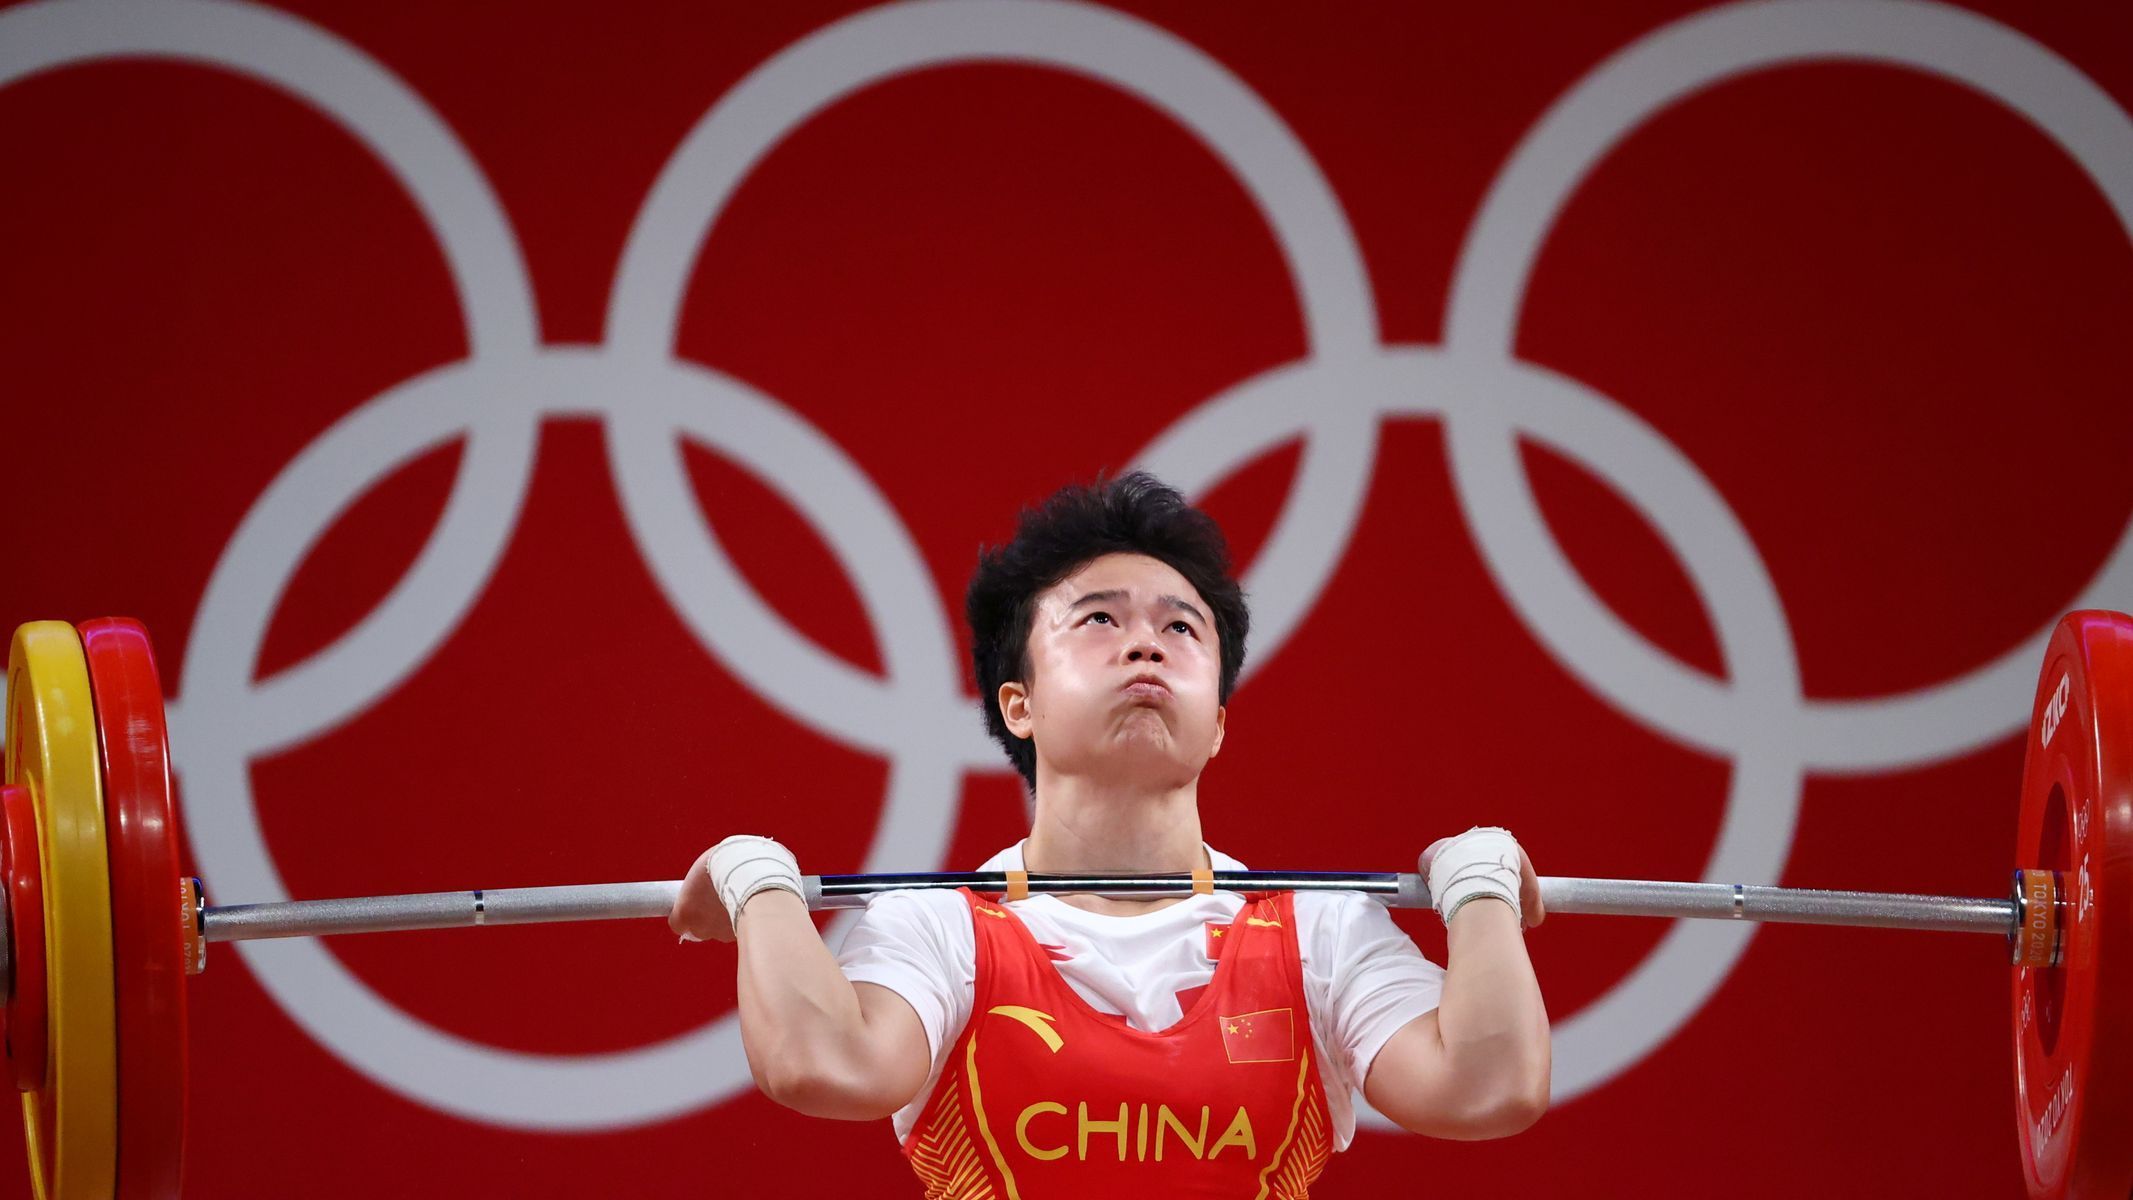 Čínská vzpěračka Chou Č'-chuej vítězí v kategorii do 49 kilogramů na OH 2020